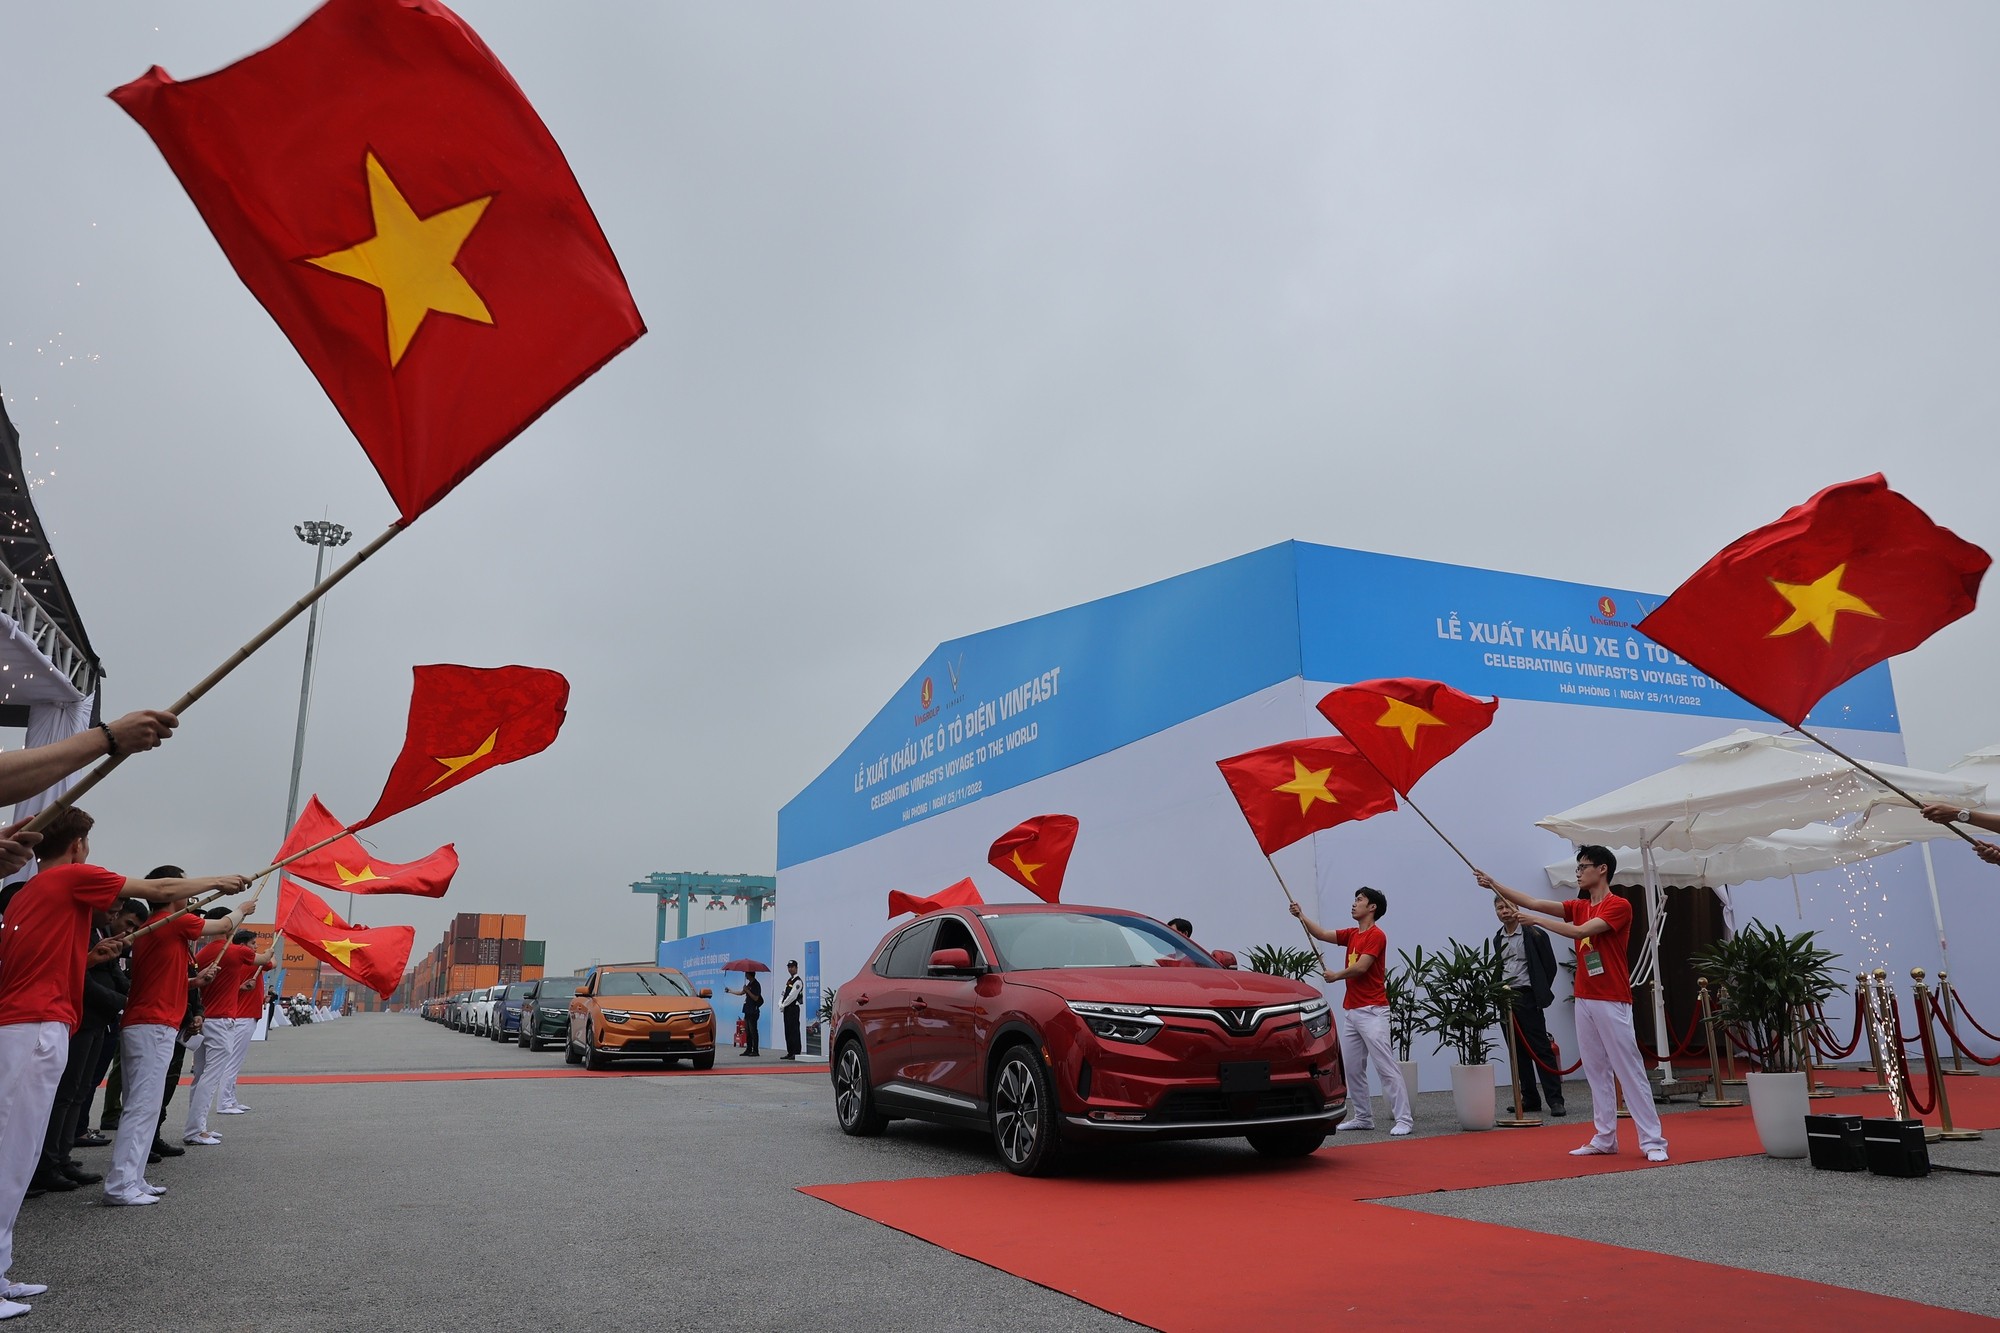 
Ôtô điện VinFast được xuất khẩu sang Mỹ là dấu mốc quan trọng của ngành công nghiệp ô tô Việt Nam
